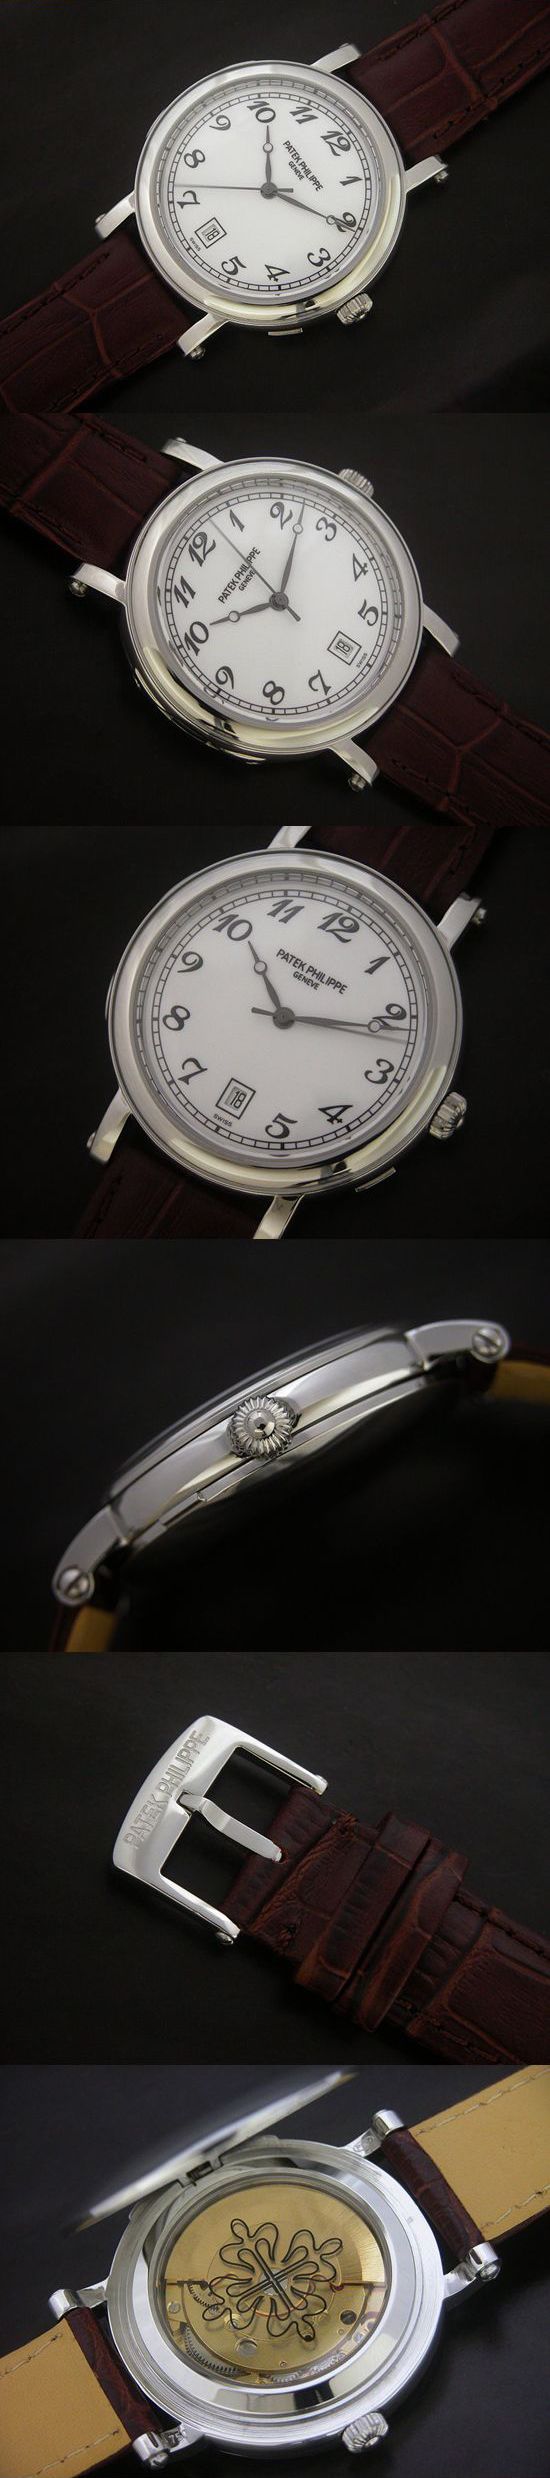 おしゃれなブランド時計がパテックフィリップ-カラトラバ-PATEK PHILIPPE-4860-ah-男性用を提供します.